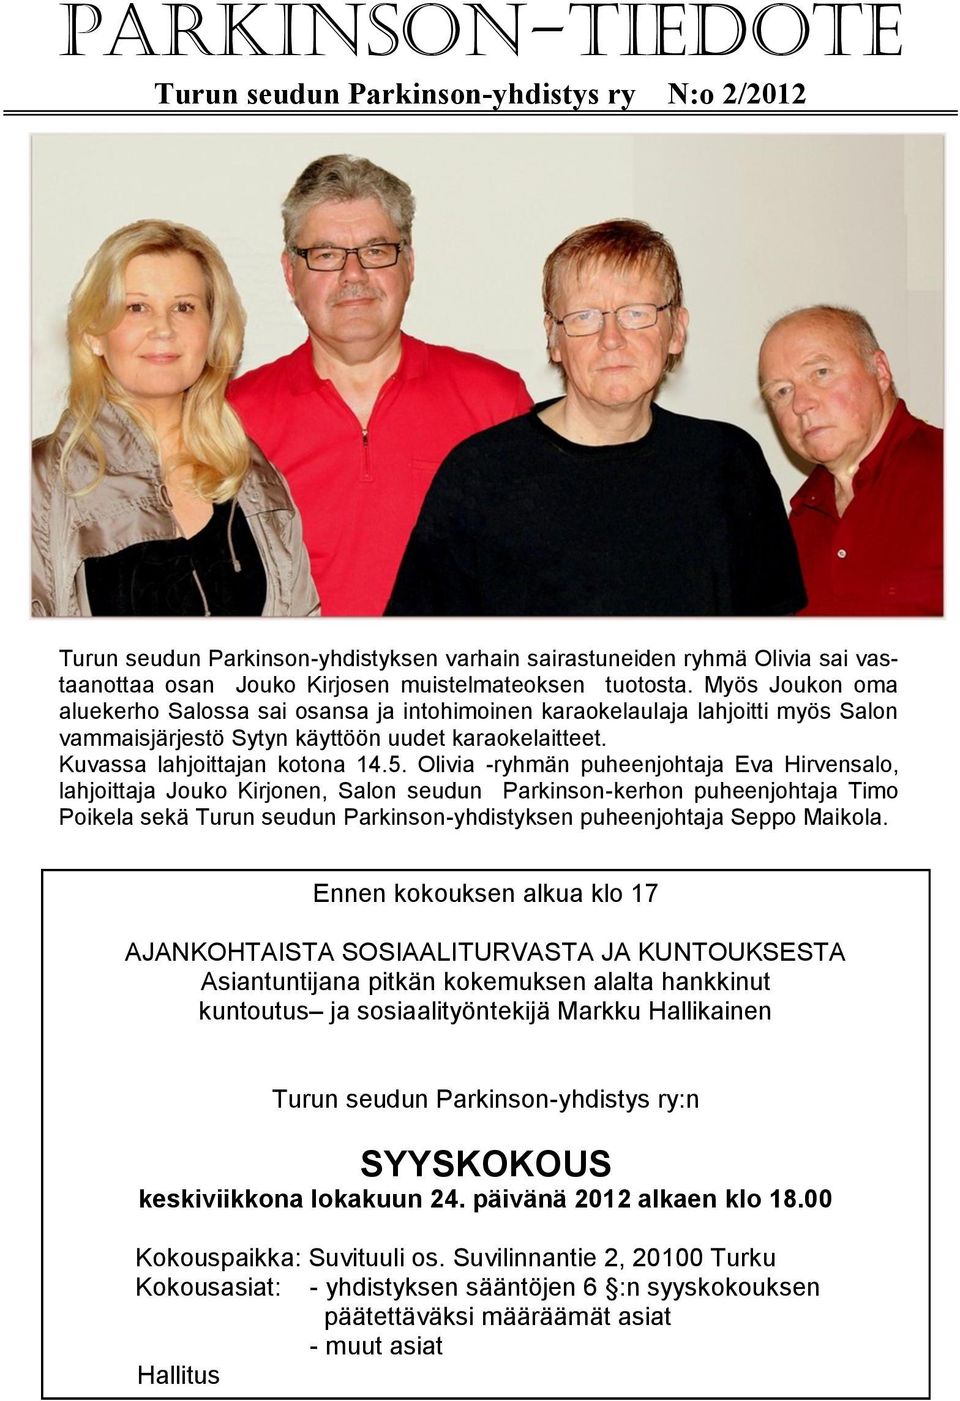 Olivia -ryhmän puheenjohtaja Eva Hirvensalo, lahjoittaja Jouko Kirjonen, Salon seudun Parkinson-kerhon puheenjohtaja Timo Poikela sekä Turun seudun Parkinson-yhdistyksen puheenjohtaja Seppo Maikola.